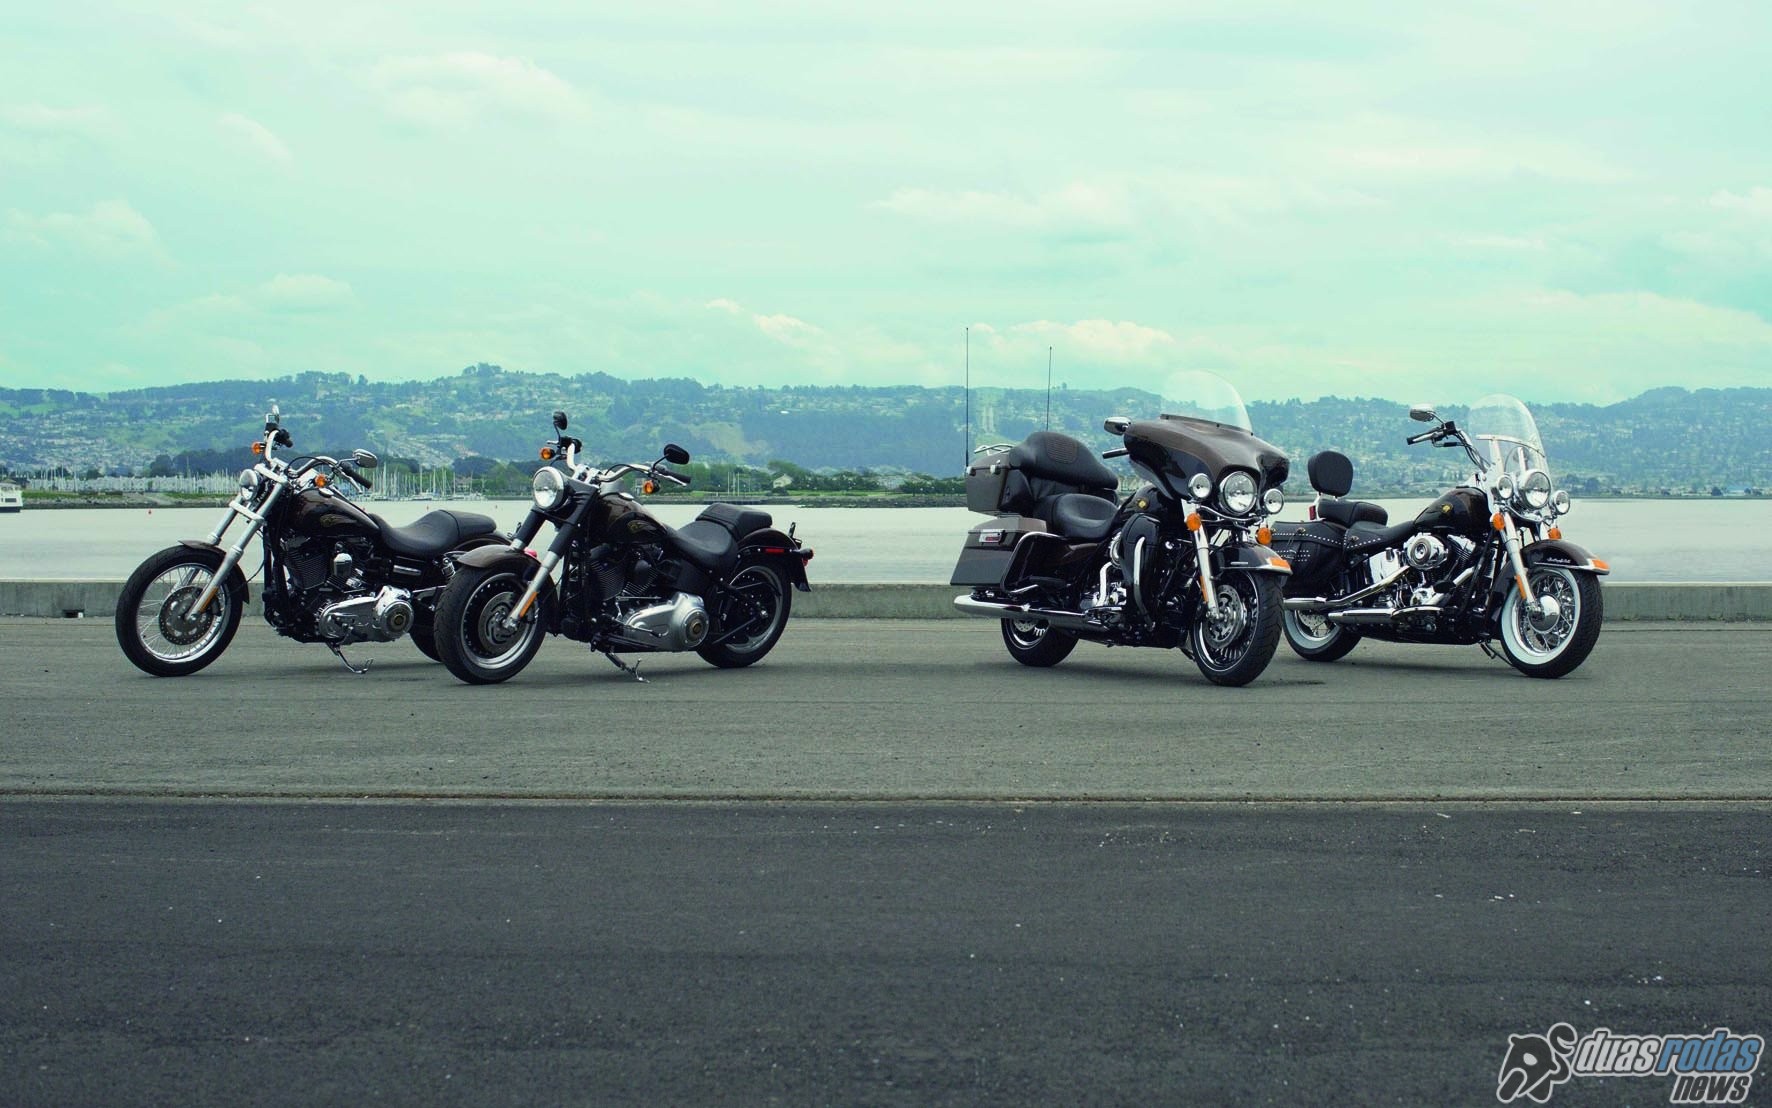 Completando 110 anos da marca, a Harley-Davidson lança sua linha 2013